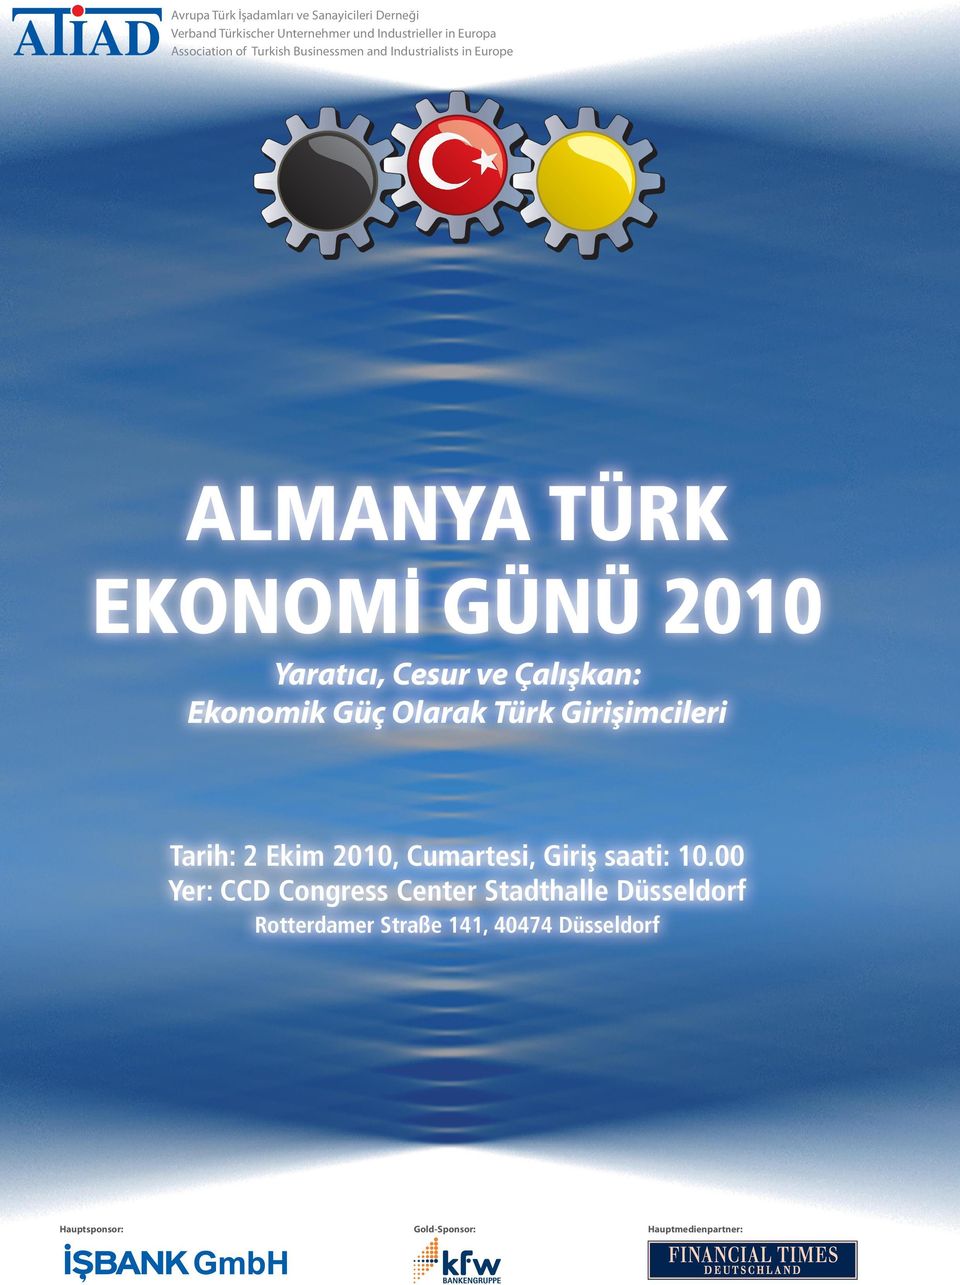 Yaratıcı, Cesur ve Çalışkan: Ekonomik Güç Olarak Türk Girişimcileri Tarih: 2 Ekim 2010, Cumartesi, Giriş saati: 10.